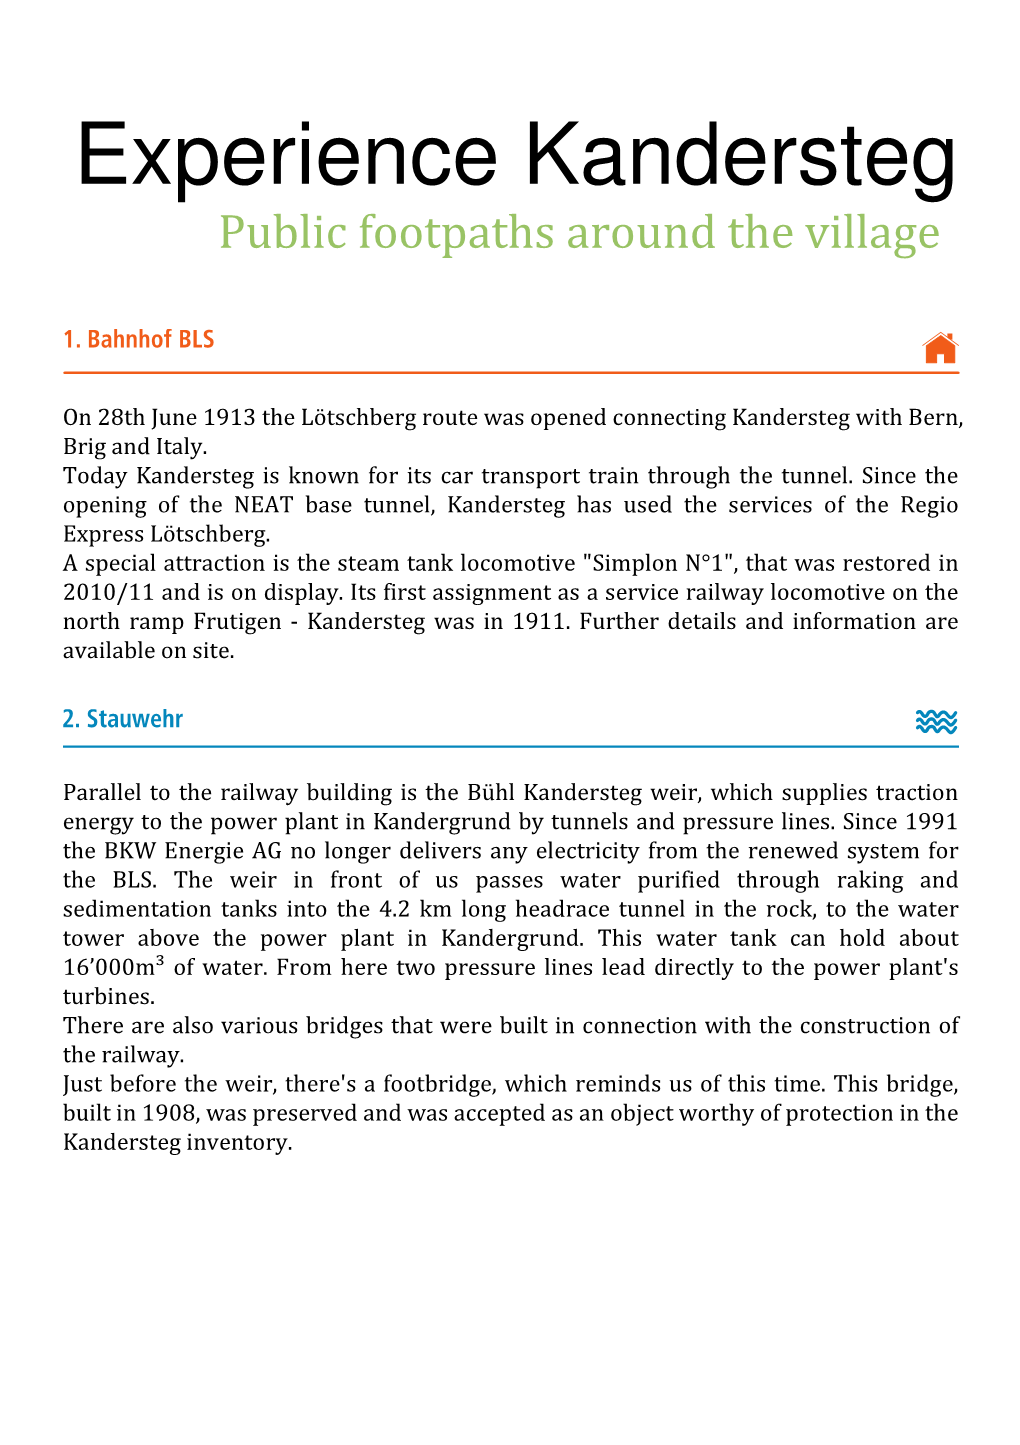 Experience Kandersteg Public Footpaths Around the Village